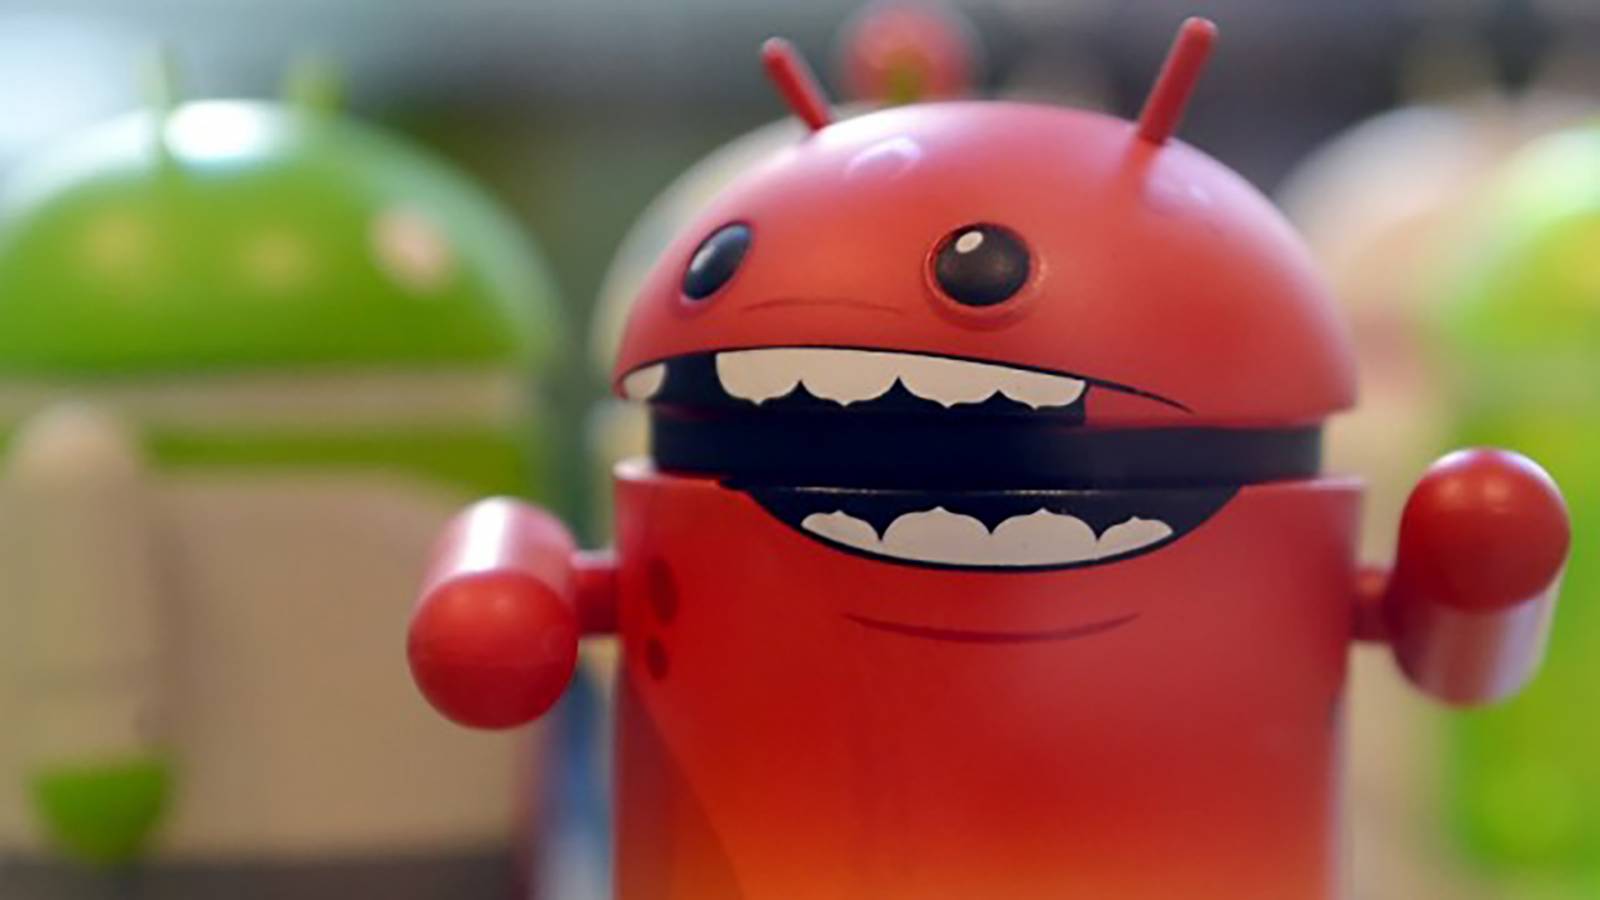 Android richtte zich op GROTE dreiging bevestigde dreiging voor miljoenen mensen van IBM